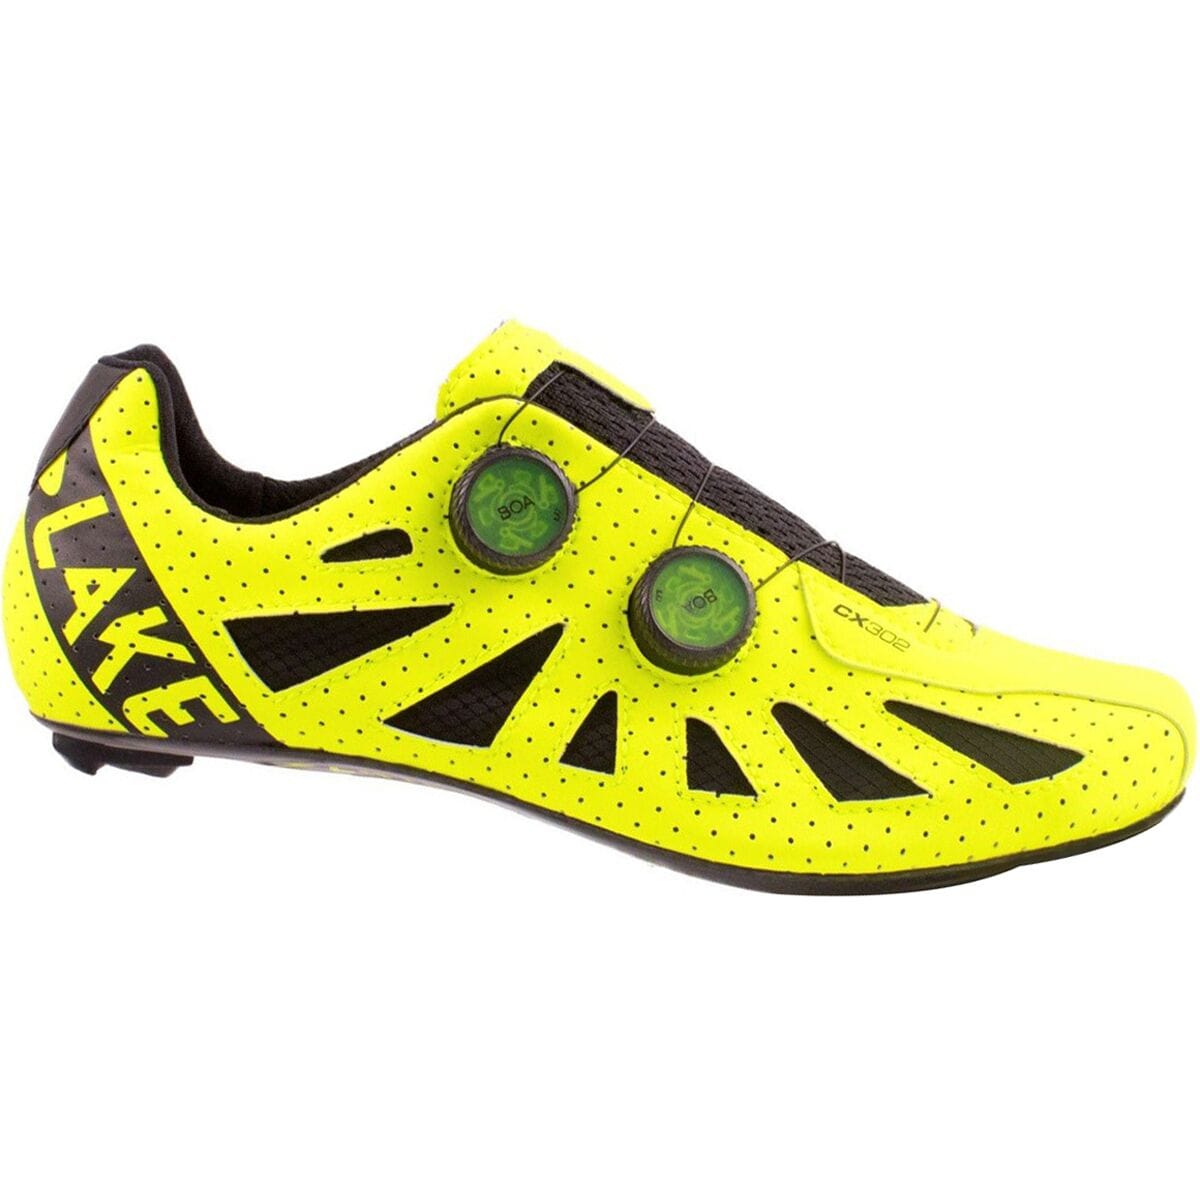 Lake CX302 Wide Cycling Shoe - Men's Hi-Viz Yellow/Black, 43.0